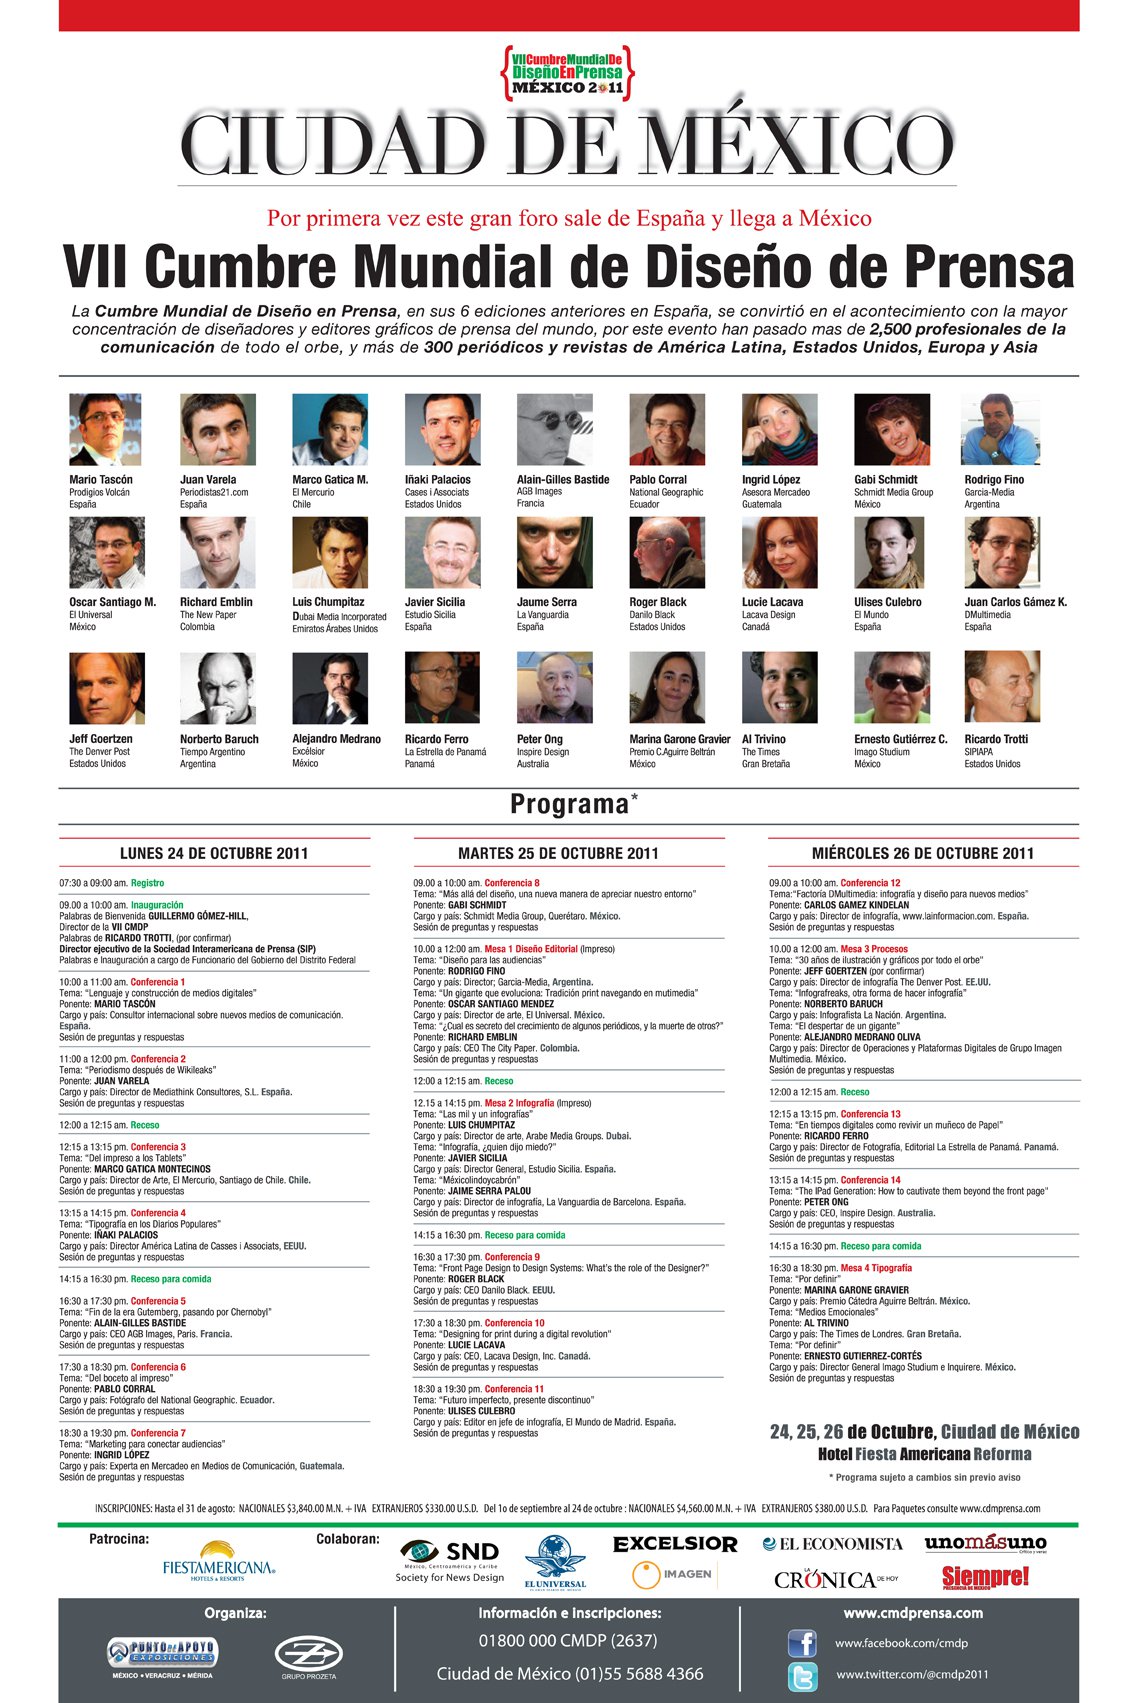 Ver el Programa de la VII Cumbre Mundial de Diseño en Prensa